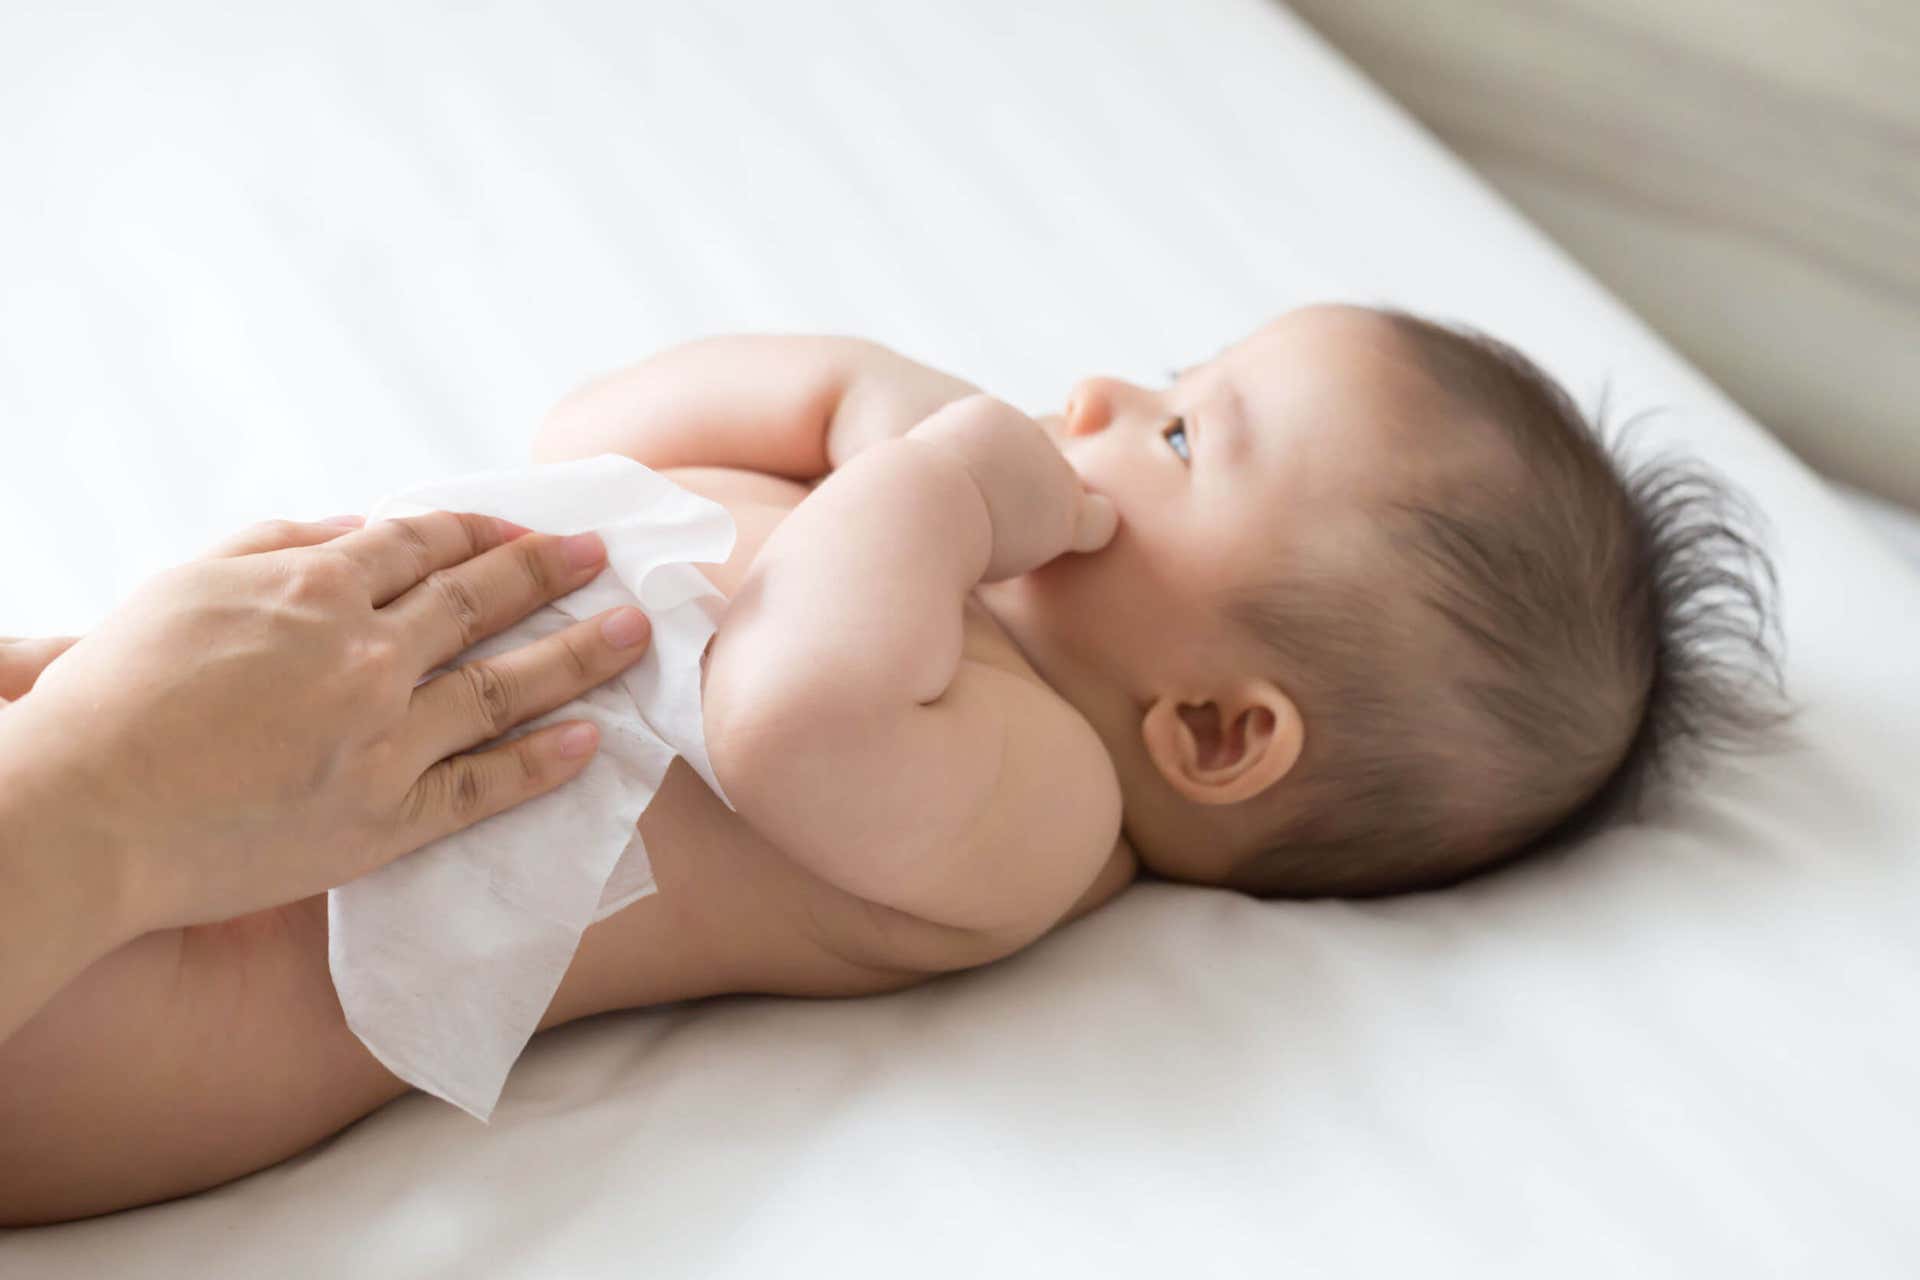 Al despertar al bebé para cambiarle el pañal hay que molestarlo lo menos posible.